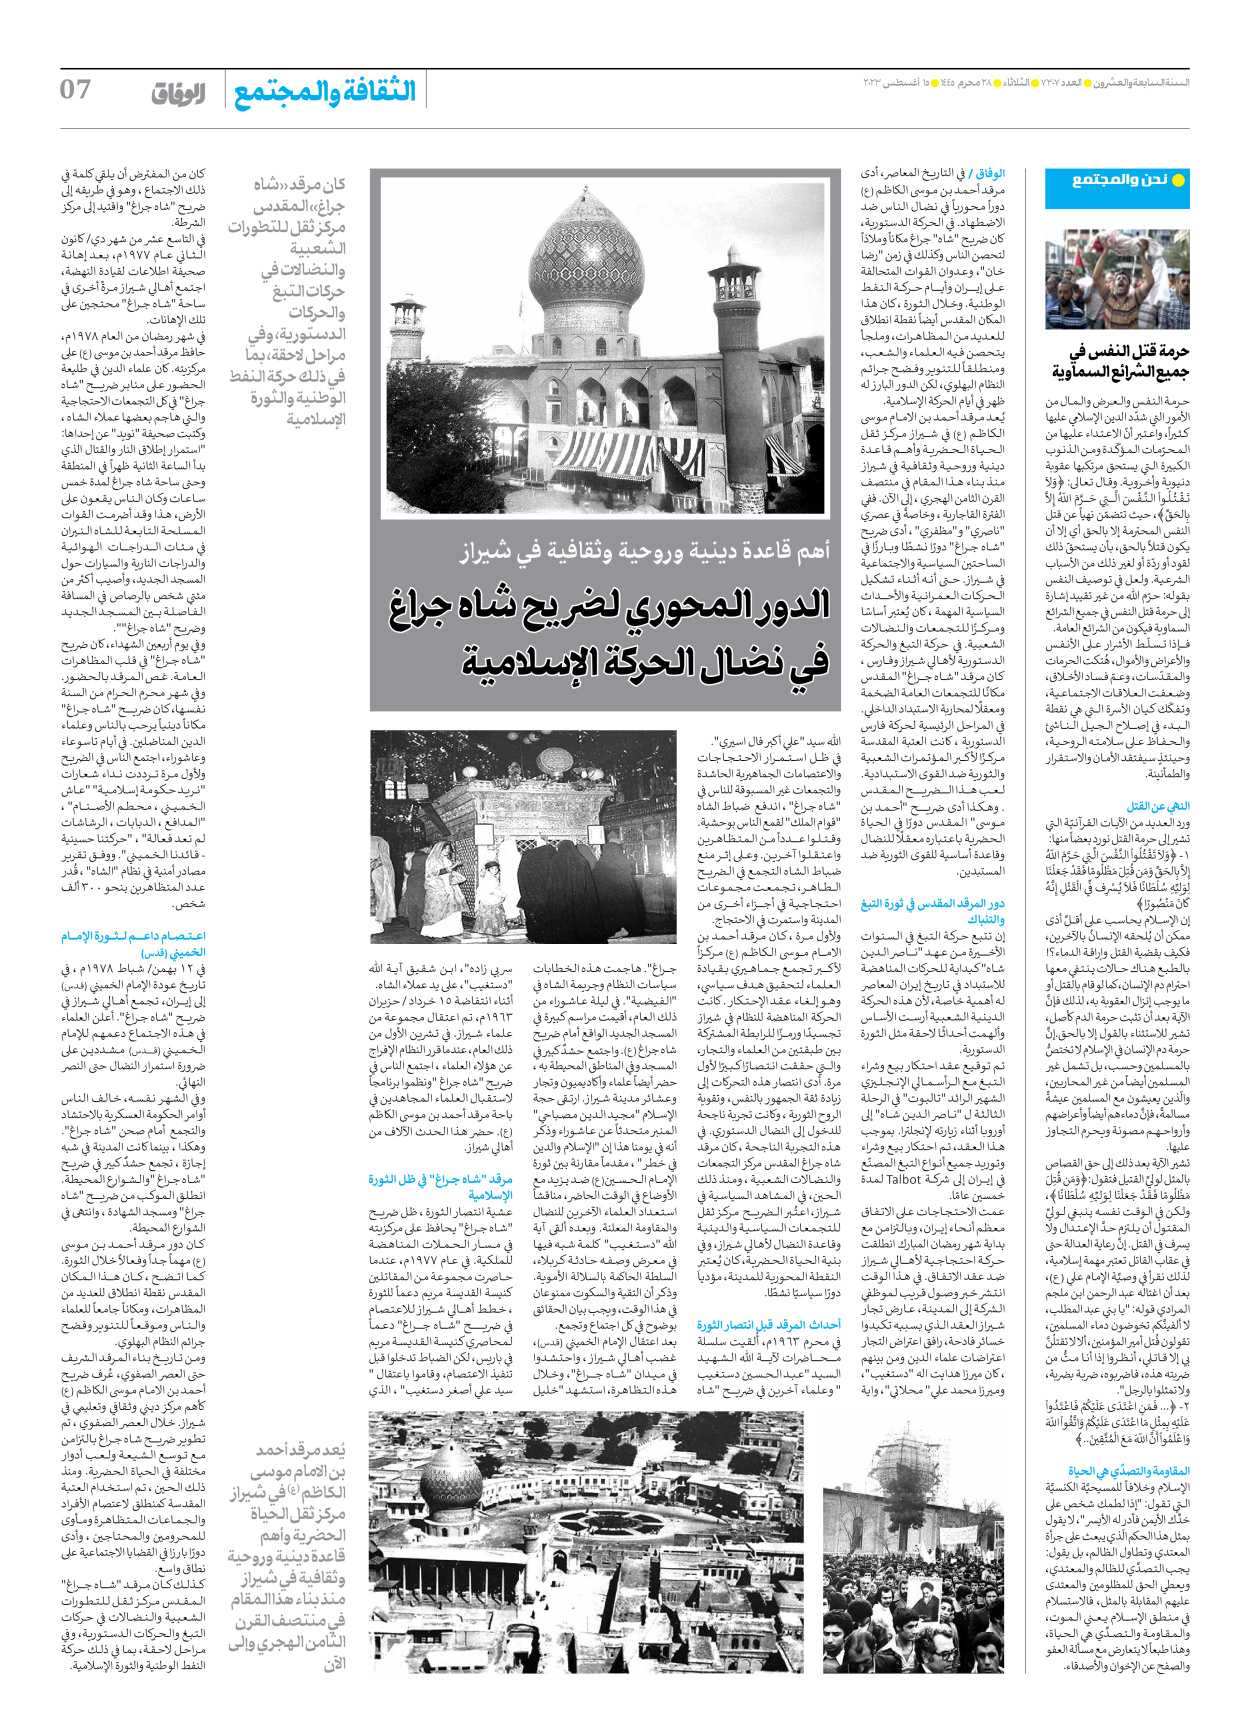 صحیفة ایران الدولیة الوفاق - العدد سبعة آلاف وثلاثمائة وسبعة - ١٤ أغسطس ٢٠٢٣ - الصفحة ۷